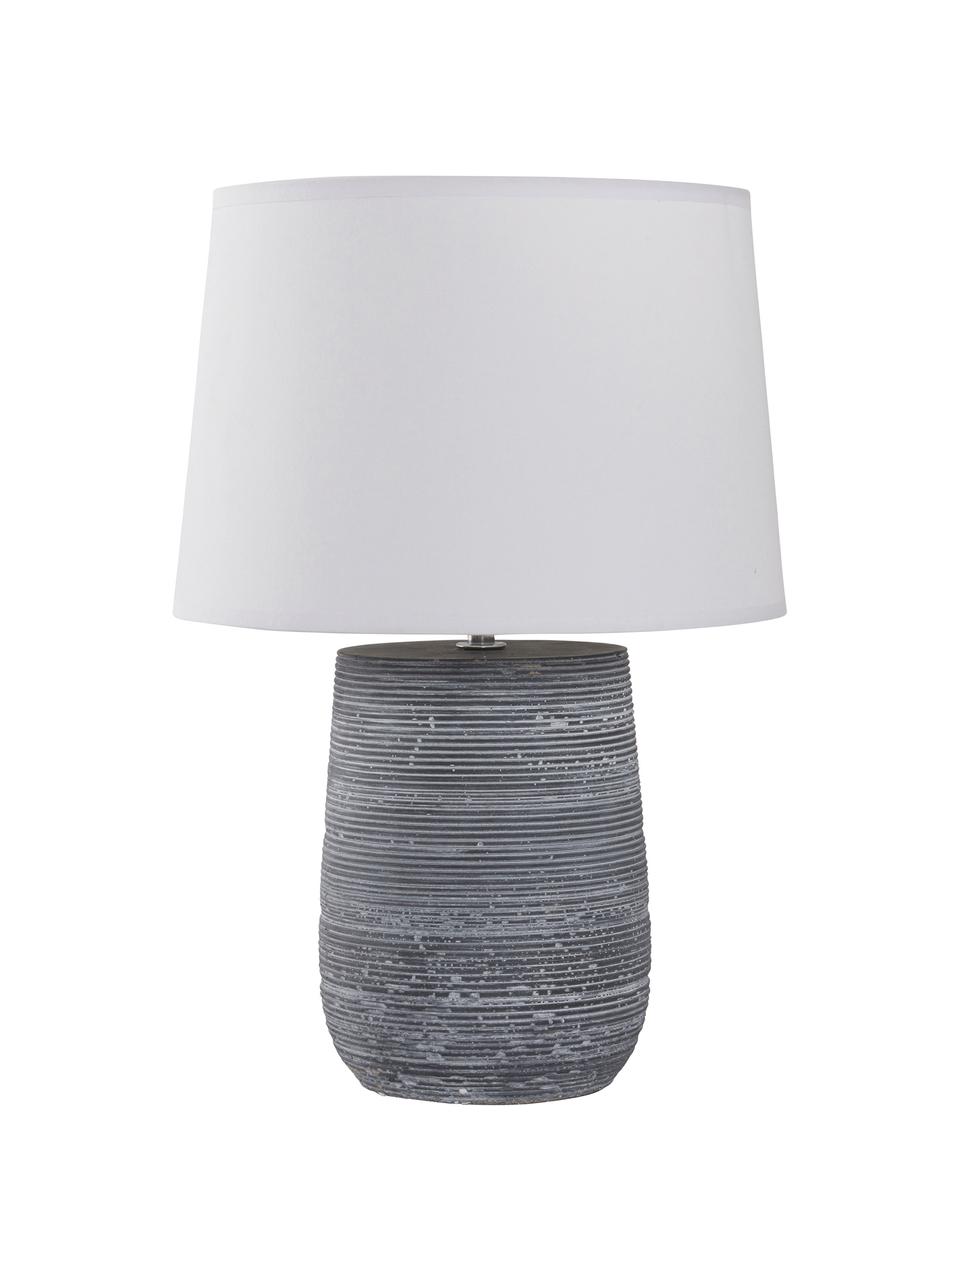 Moderne tafellamp Clemente betonnen voet, Lampenkap: katoen, Lampvoet: beton, Wit, grijs, Ø 29 x H 42 cm